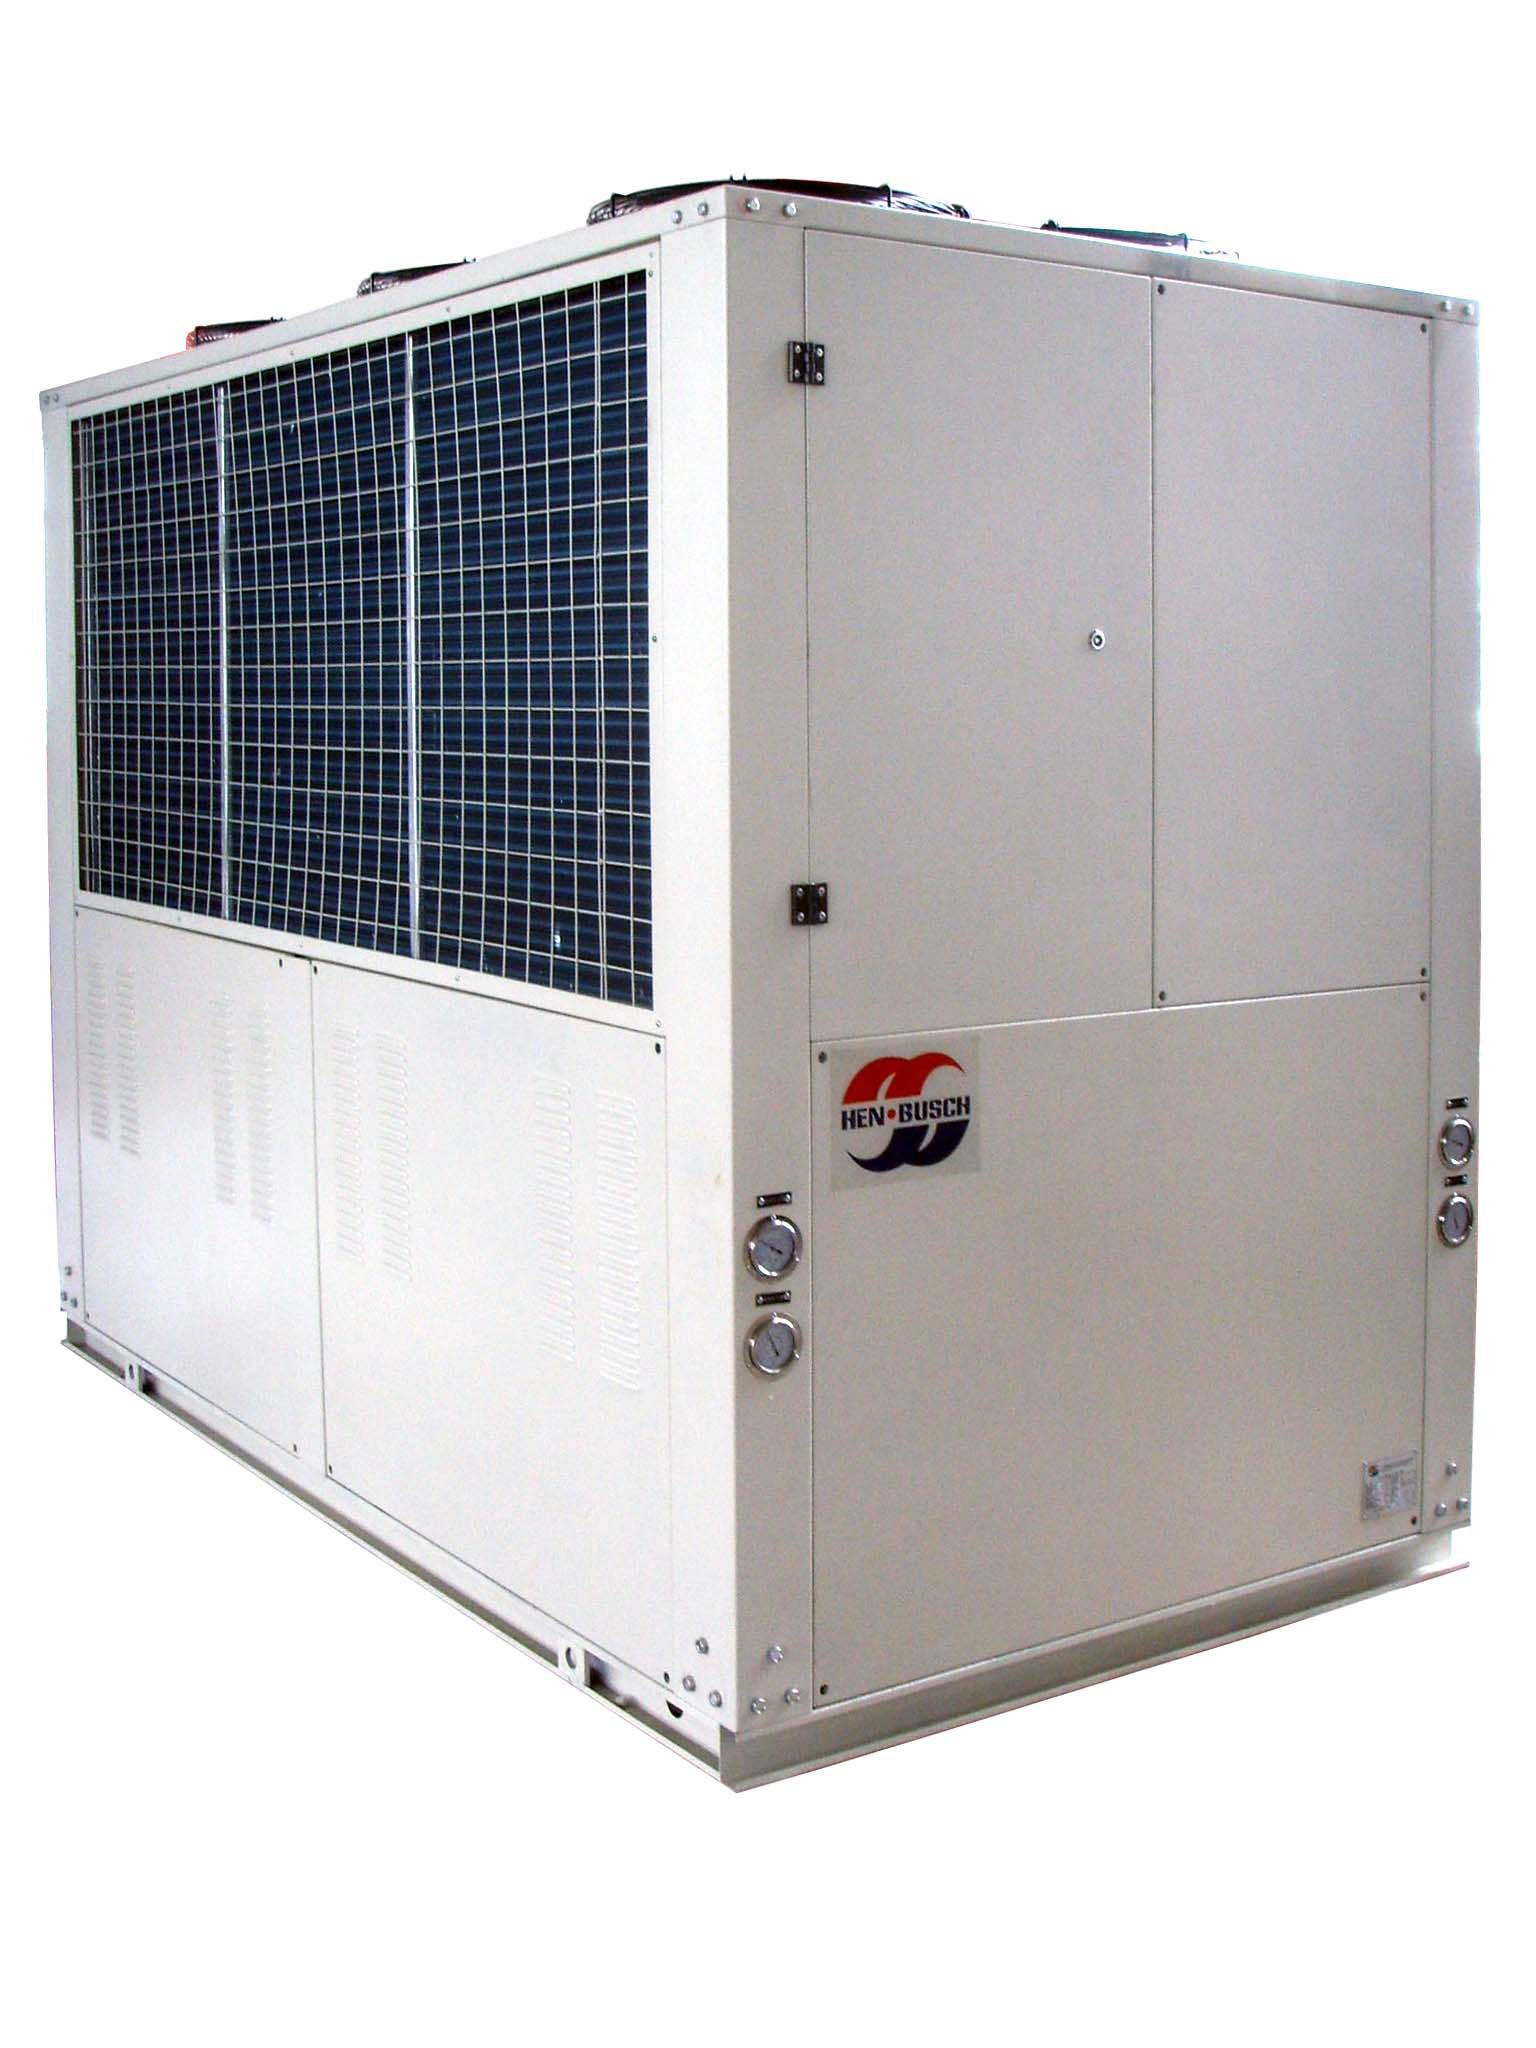 HBA 水冷箱型冷水机组&风冷箱型冷水机组